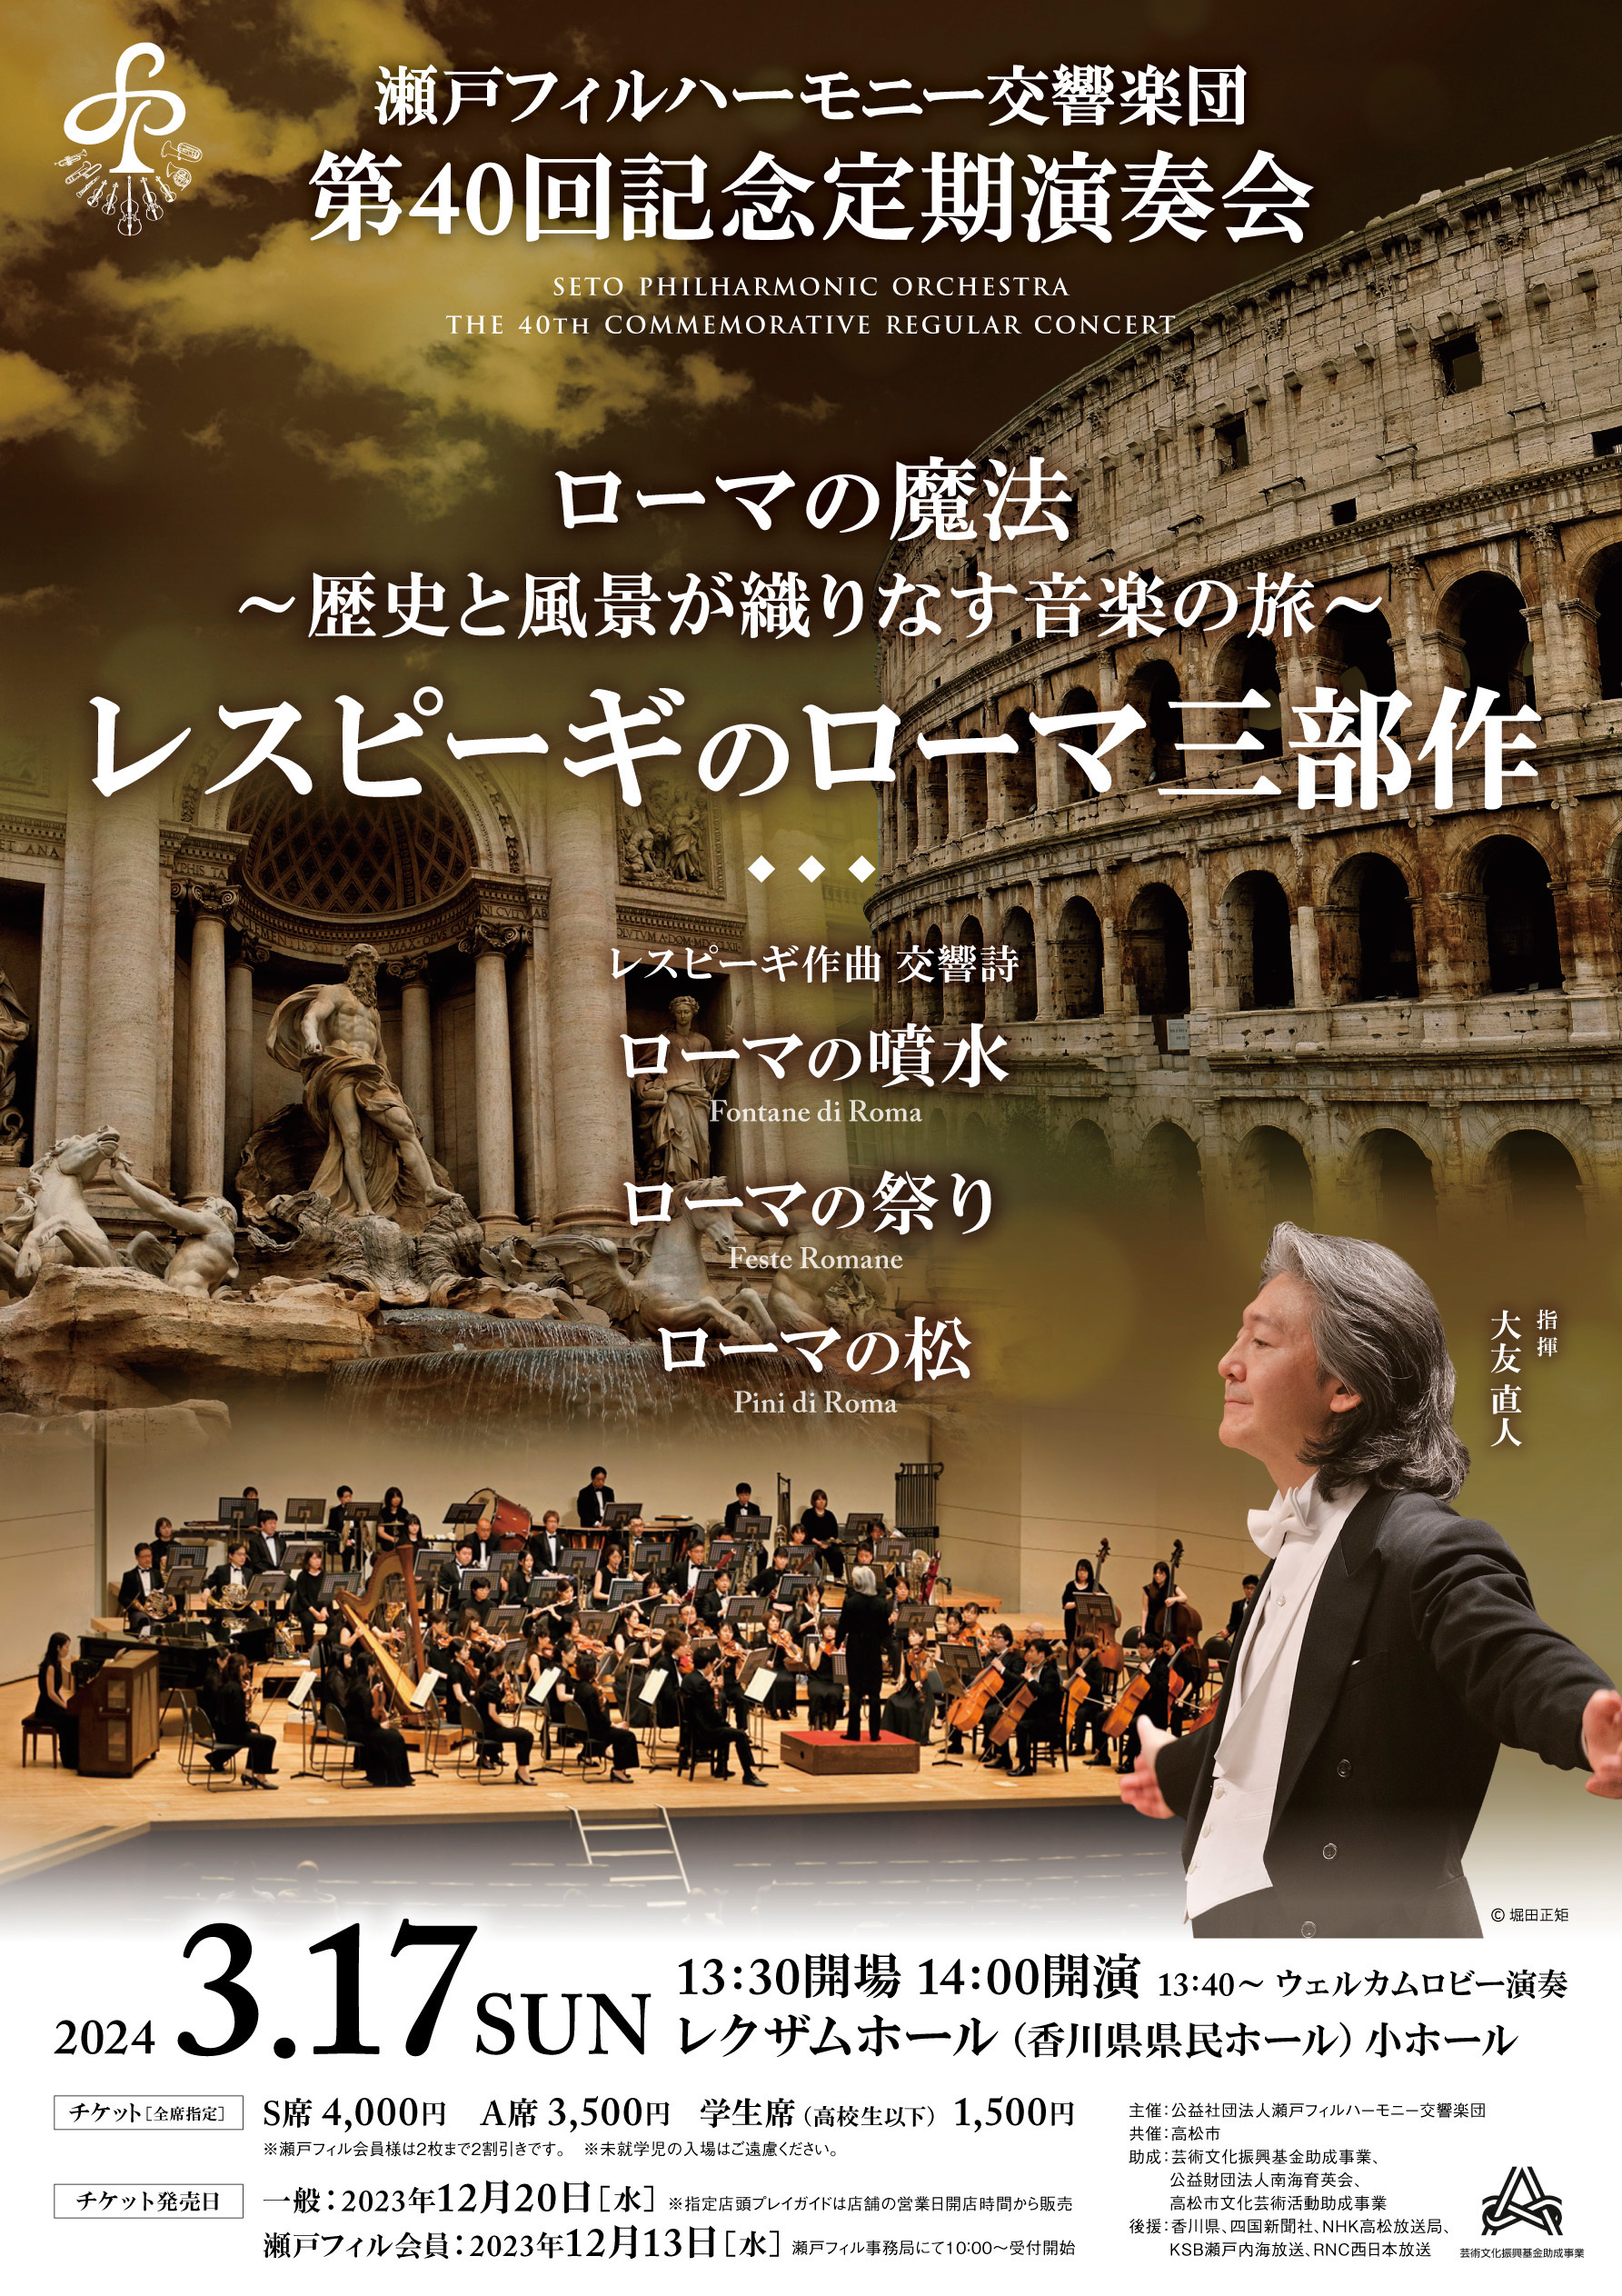 瀬戸フィルハーモニー交響楽団第40回記念定期演奏会のフライヤー画像